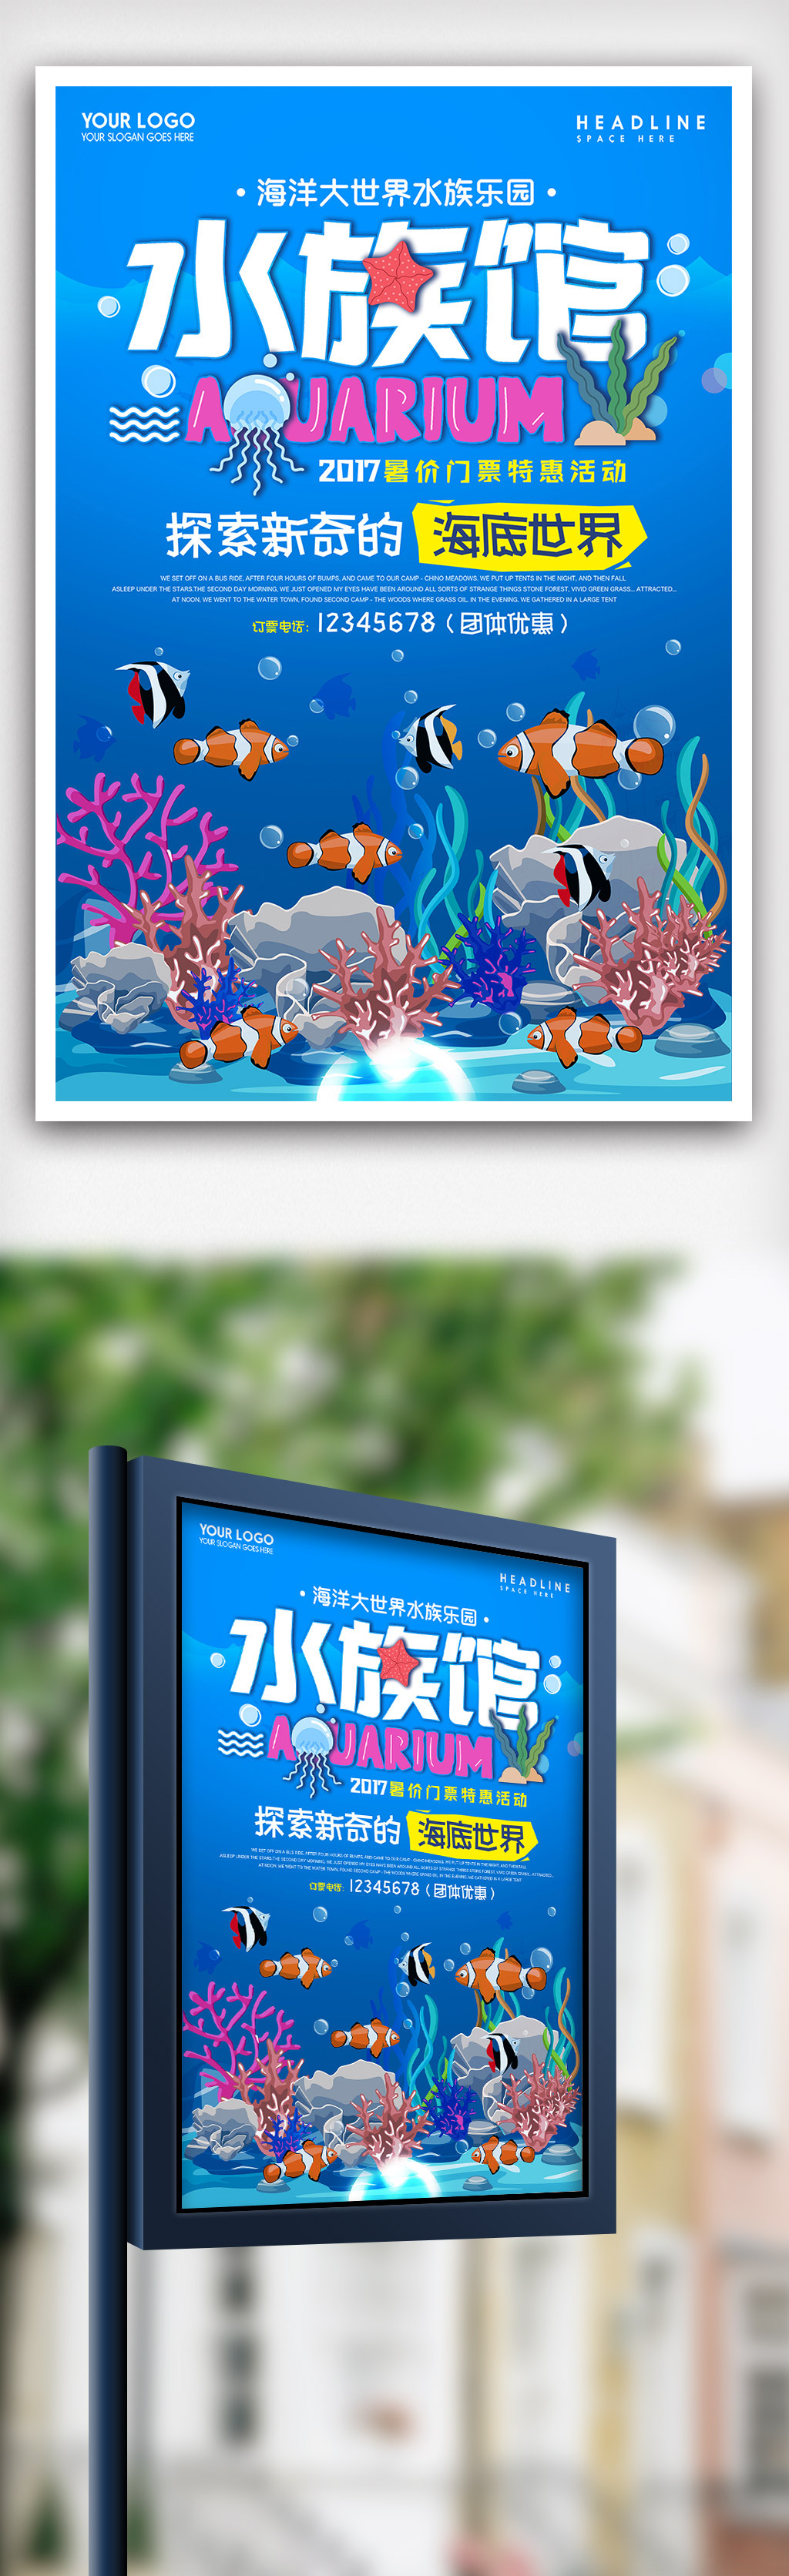 梦幻水族馆海报设计图片